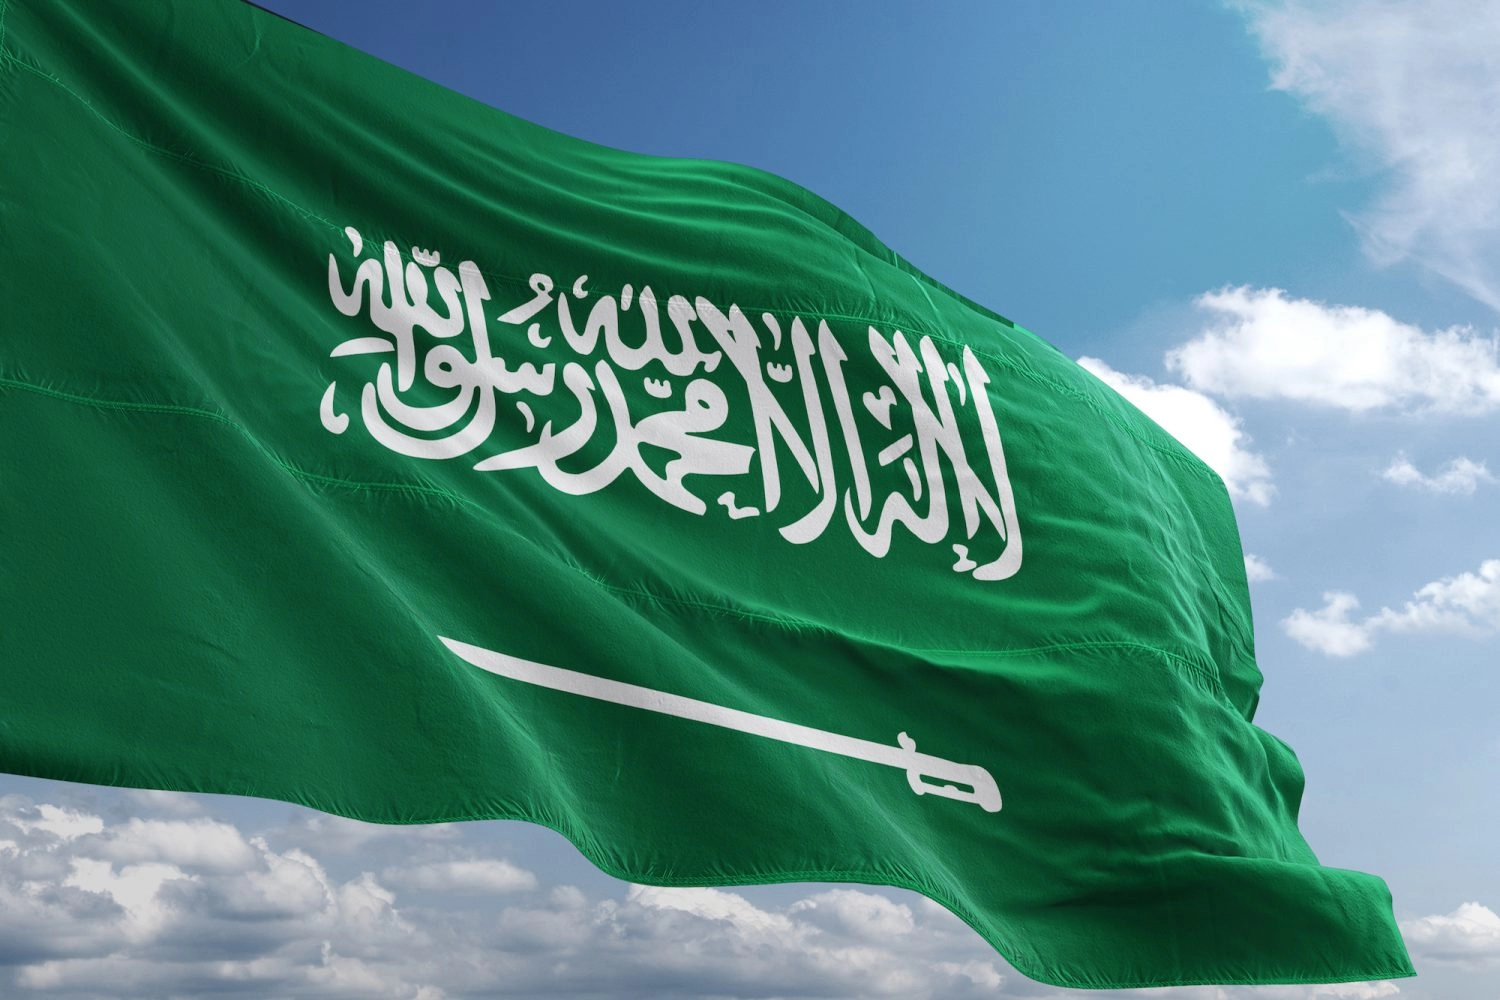 تسهيلات جديدة في السعودية .. ” الراجحي” يحدد شروط قرض من امكان 1444 للتمويل الشخصي للمواطنين والمقيمين (تعرف على الشروط)